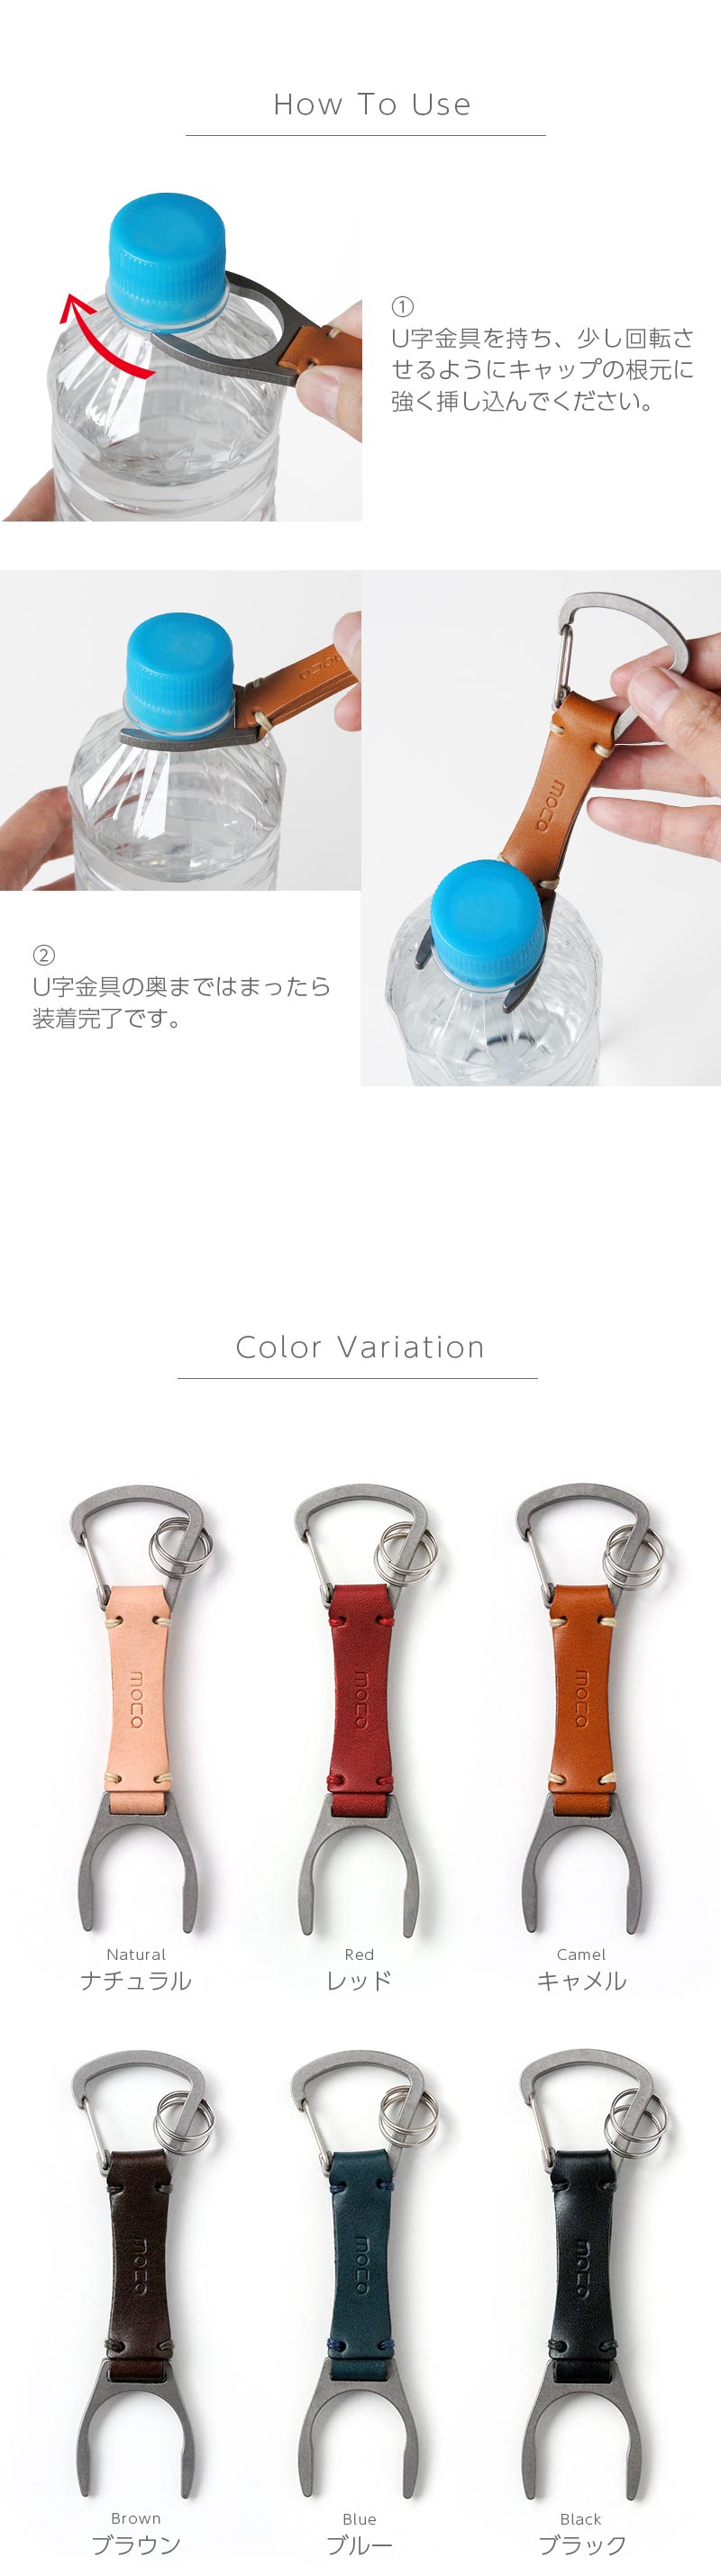 Moca モカ Pet Bottle Holder 01 ペットボトルホルダー カラビナ 本革 おしゃれ 日本製 キーホルダー キーケース